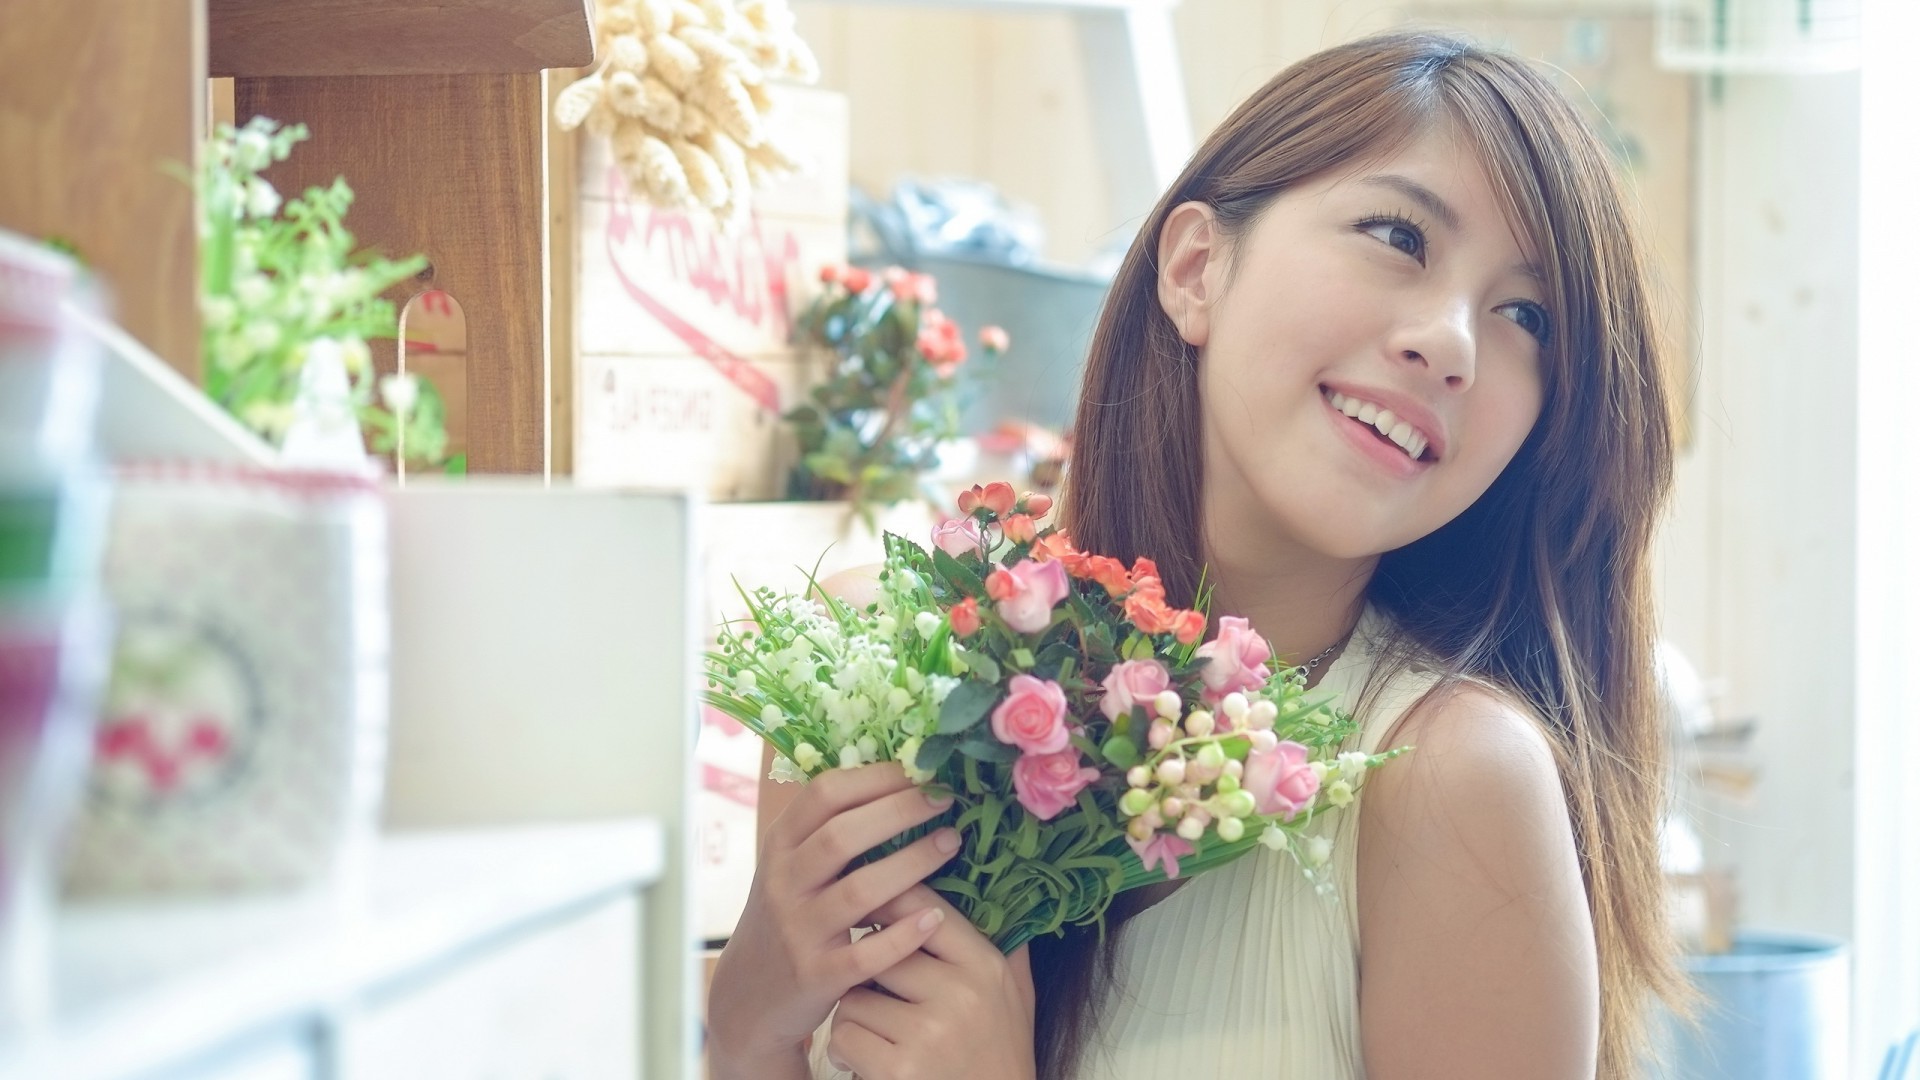 Азиатка, улыбка, девушка, букет цветов